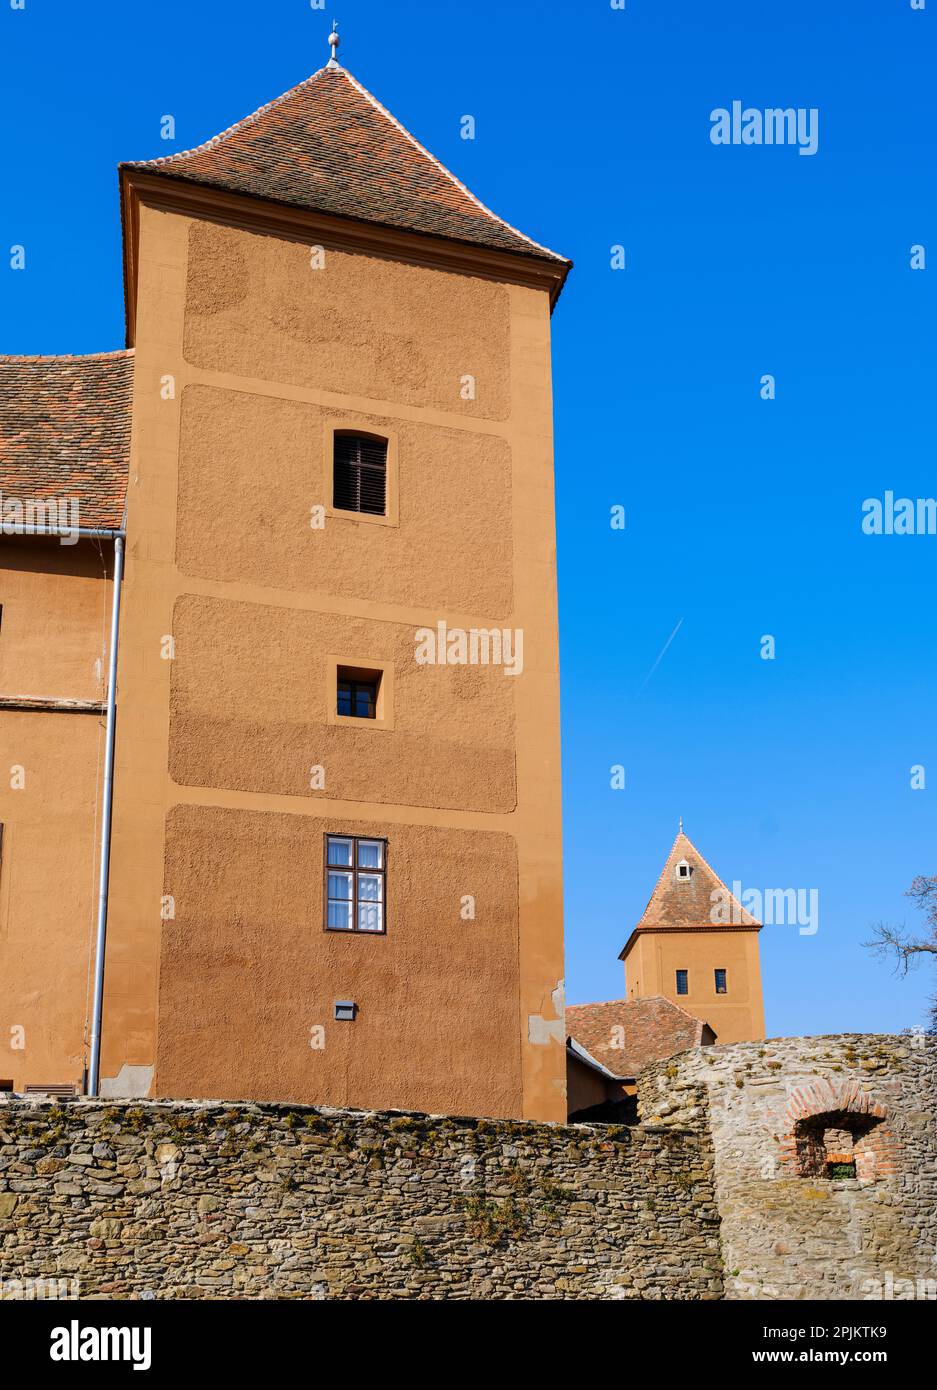 Château de Jurisics. La ville médiévale de Koszeg dans l'ouest de la Transdanubia près de la frontière autrichienne, la Hongrie Banque D'Images